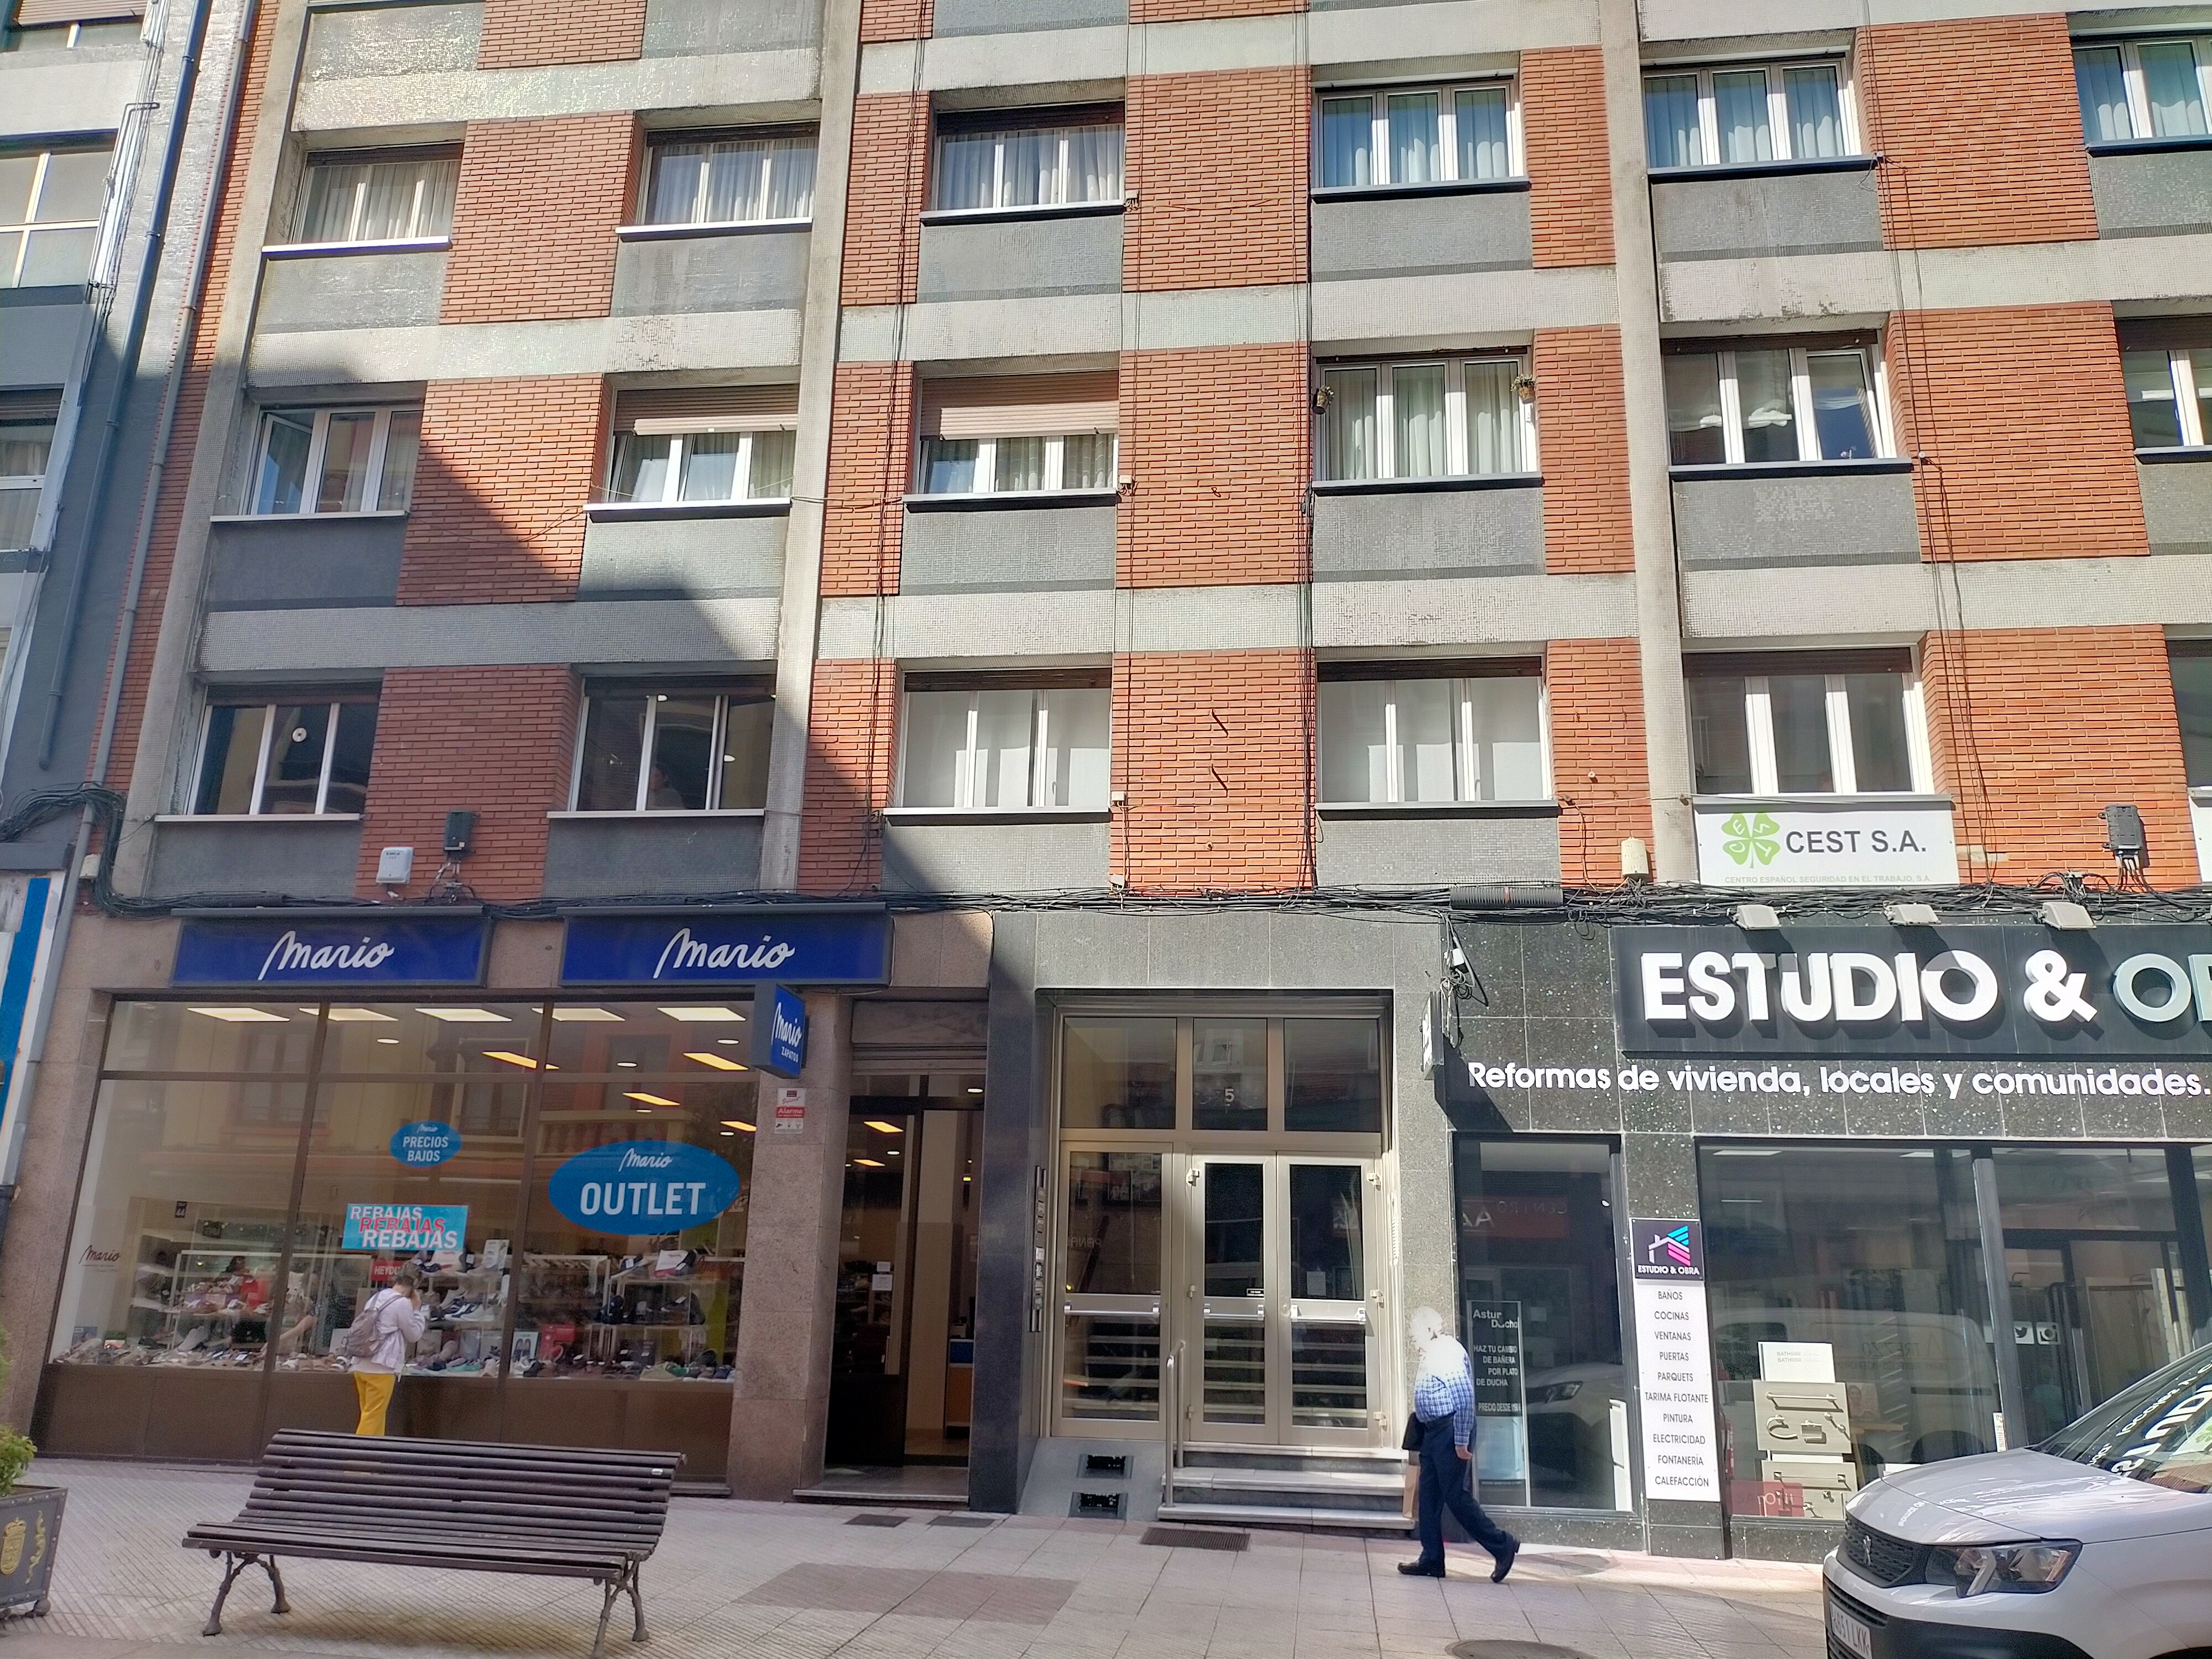 Alquiler de pisos, aticos, bajos comerciales, trasteros en oviedo Asturias